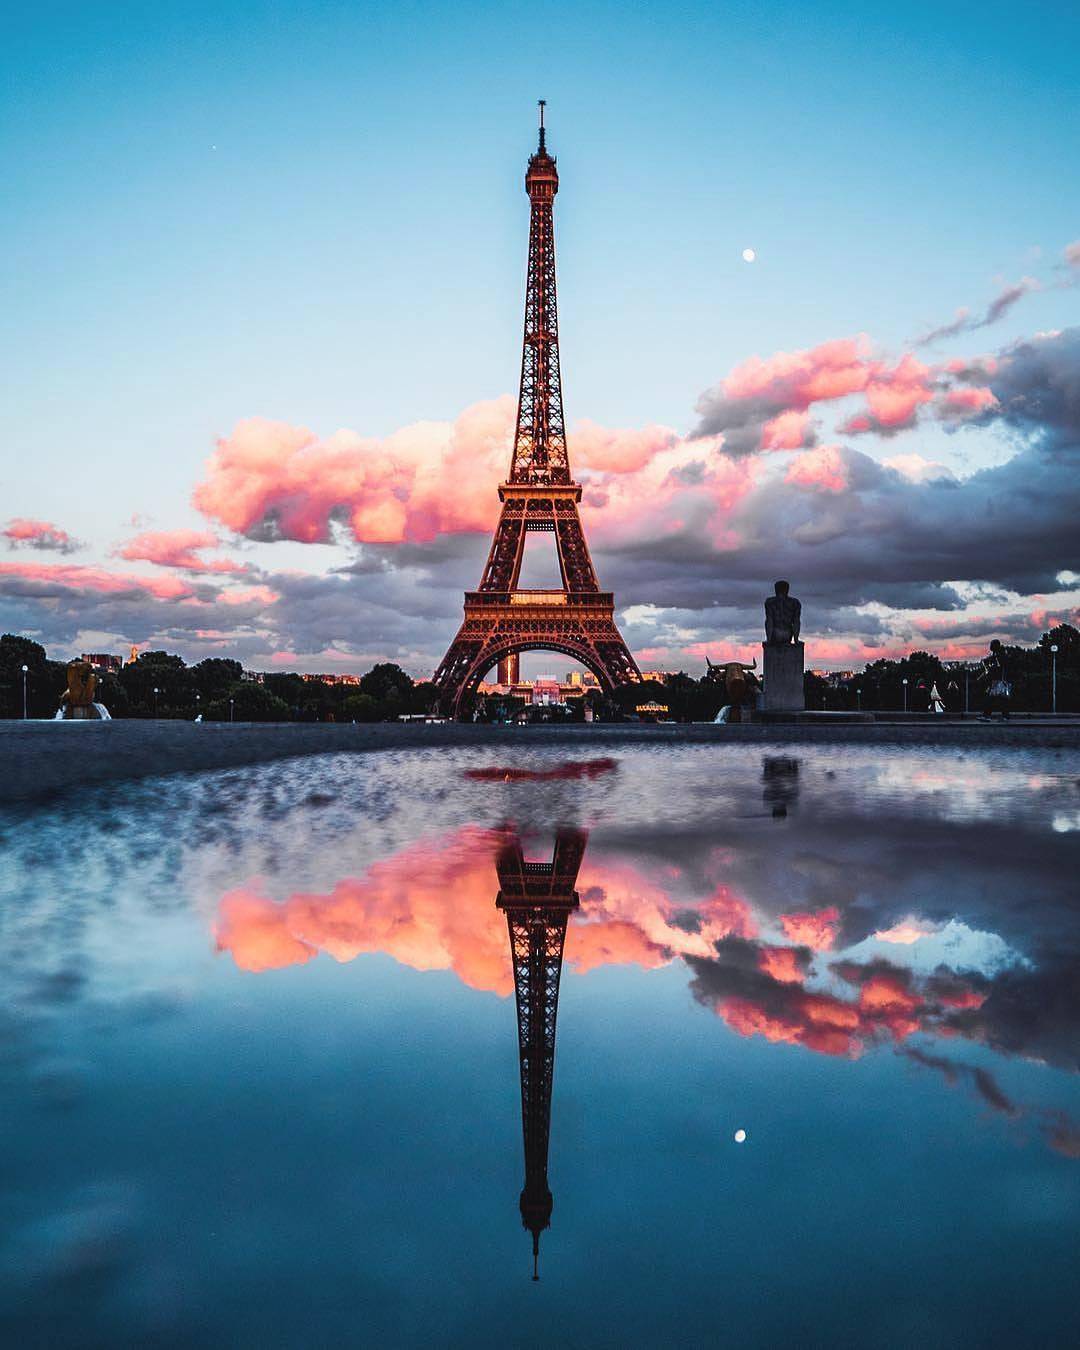 Bộ Sưu Tập Hình Ảnh Tháp Eiffel Đẳng Cấp 4K Với Hơn 999 Tấm Hình  TH Điện  Biên Đông